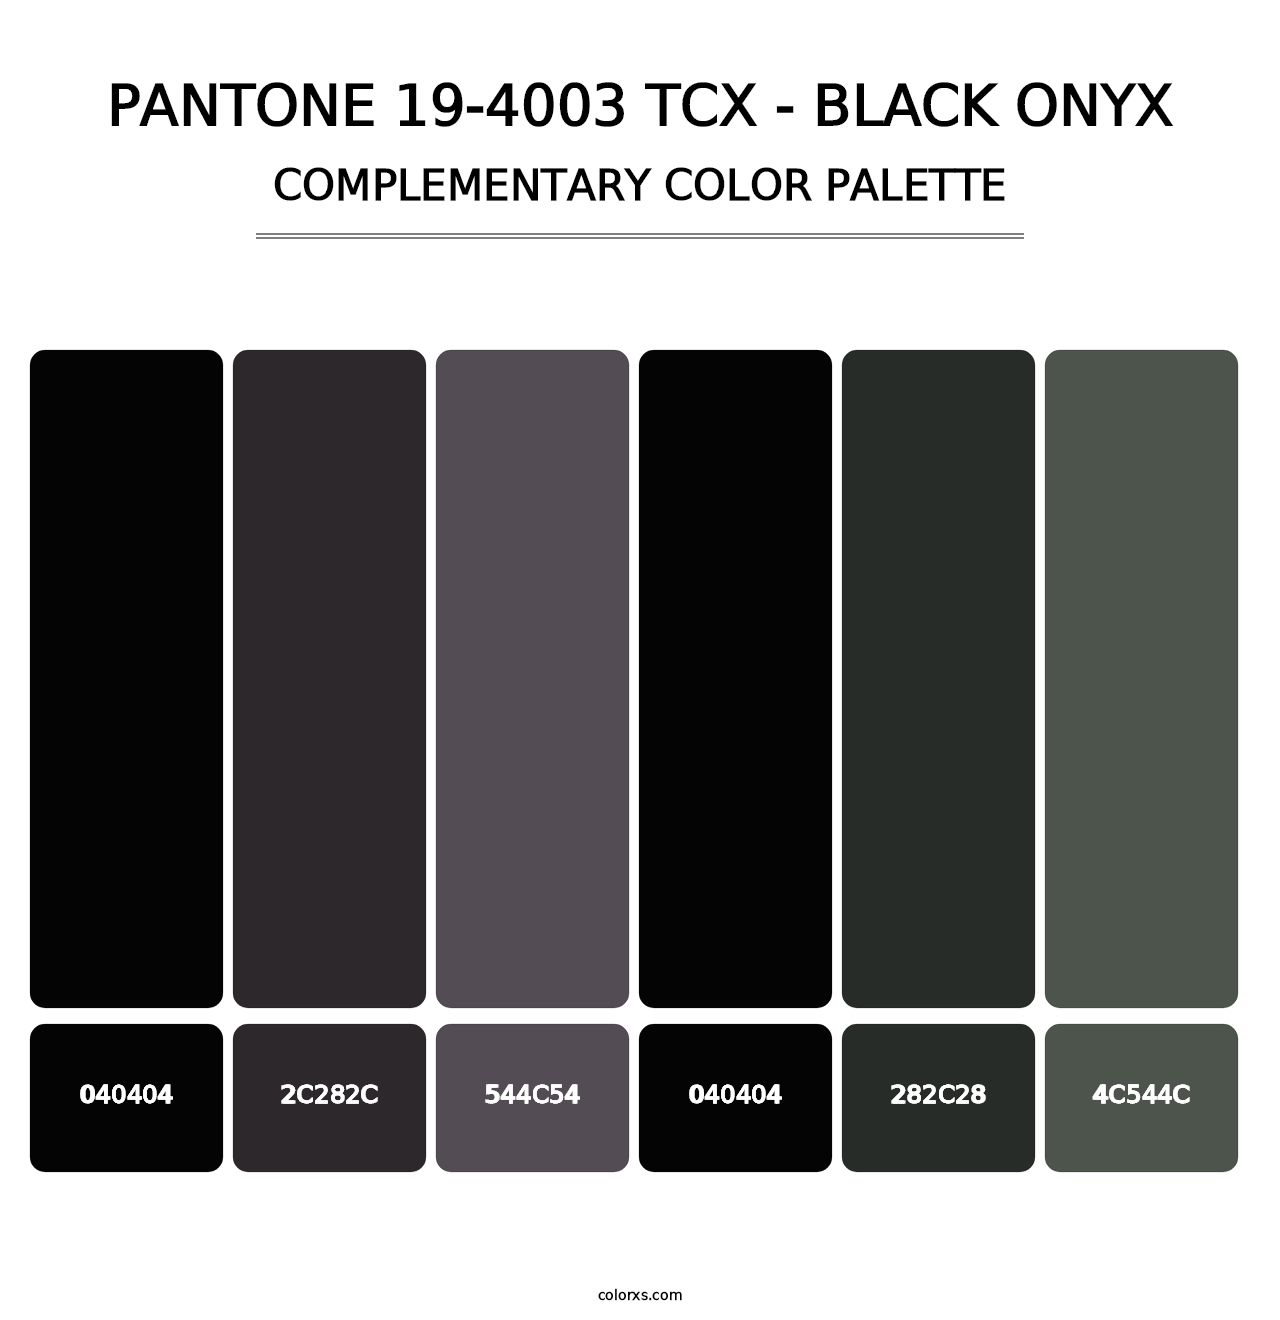 PANTONE 19-4003 TCX - Black Onyx - Complementary Color Palette